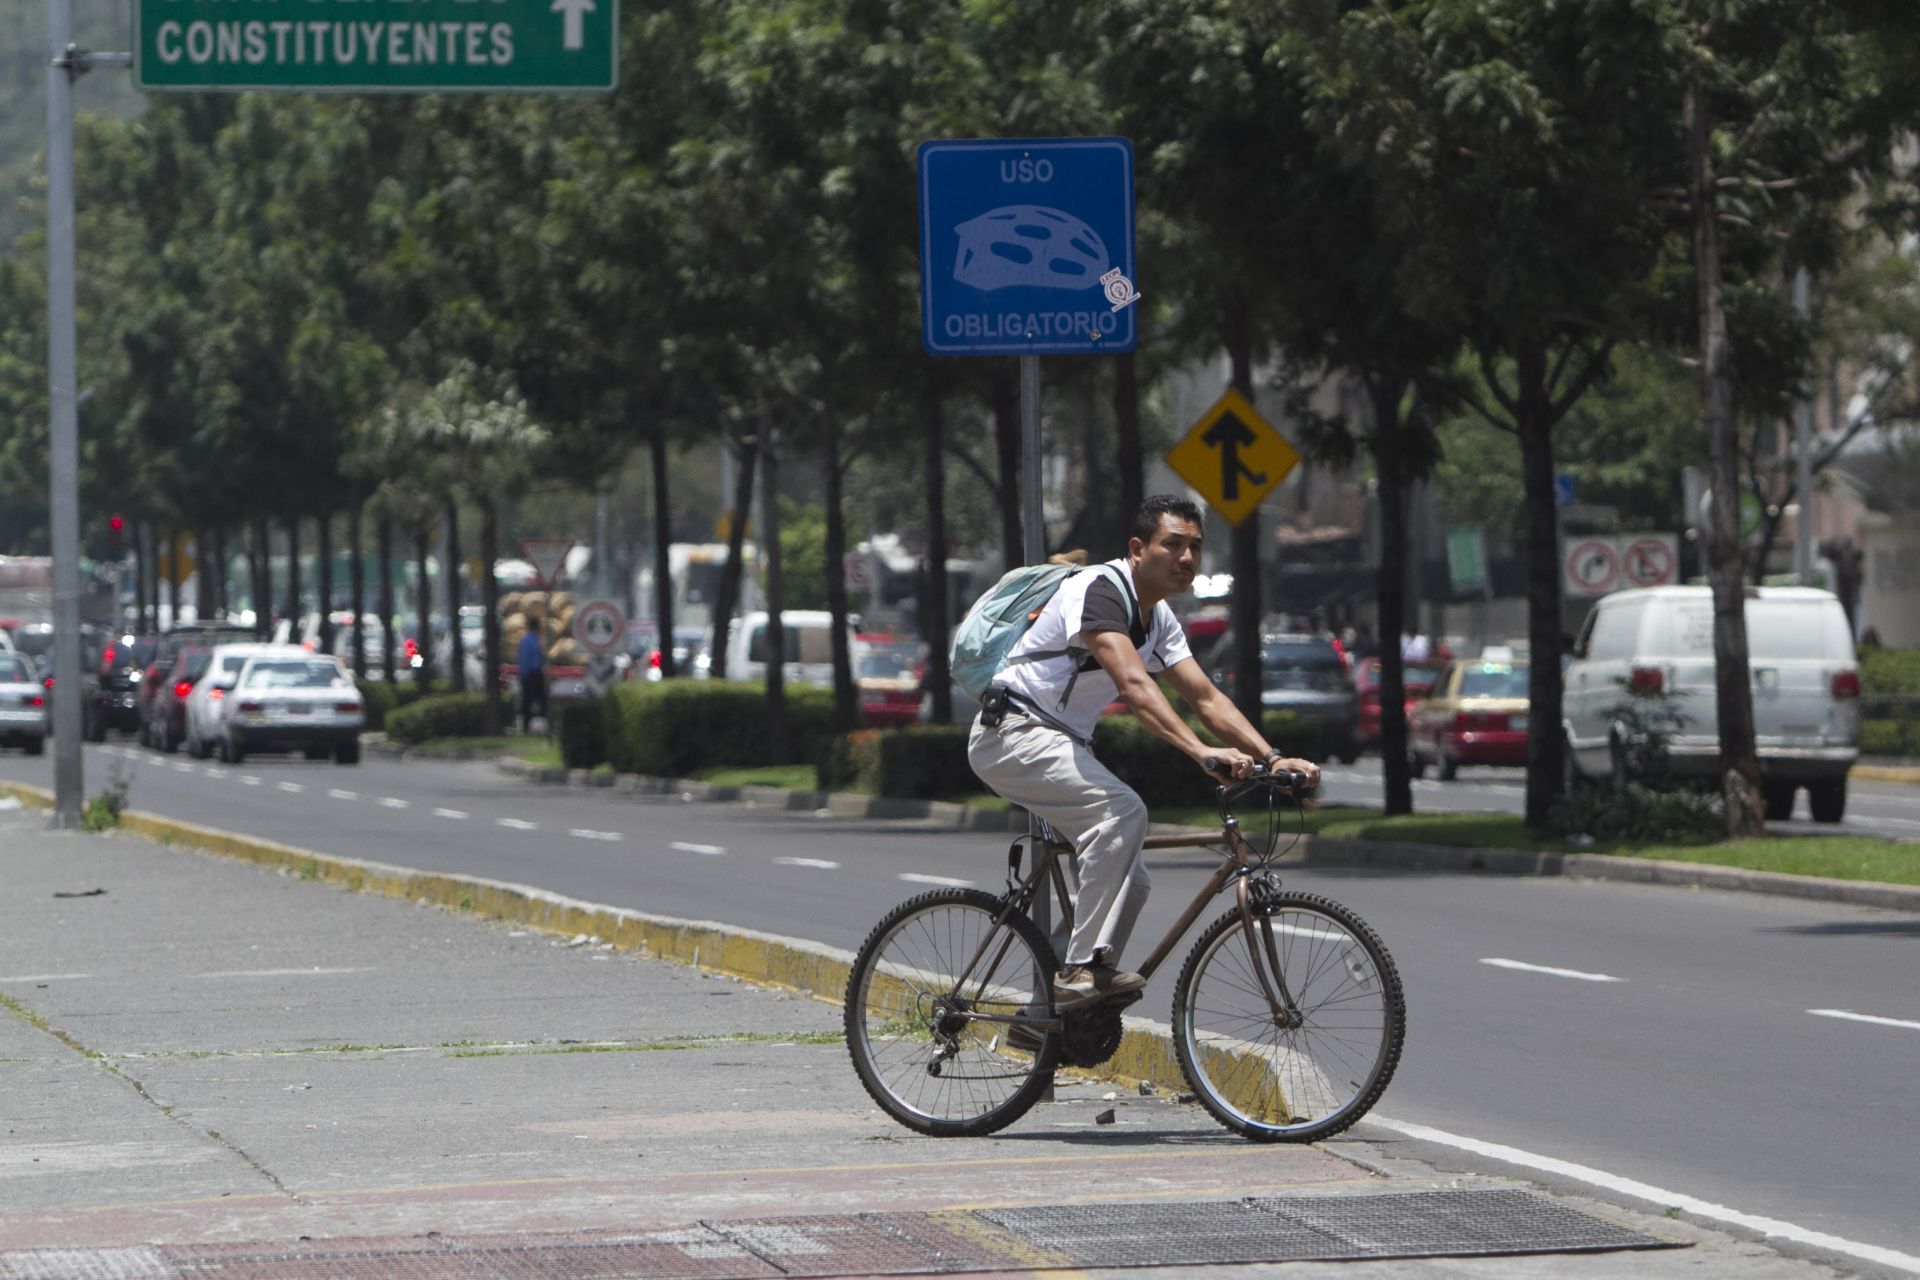 Su némesis: Habitantes de Puebla quitan ciclovías porque la calle "es sólo para coches" 